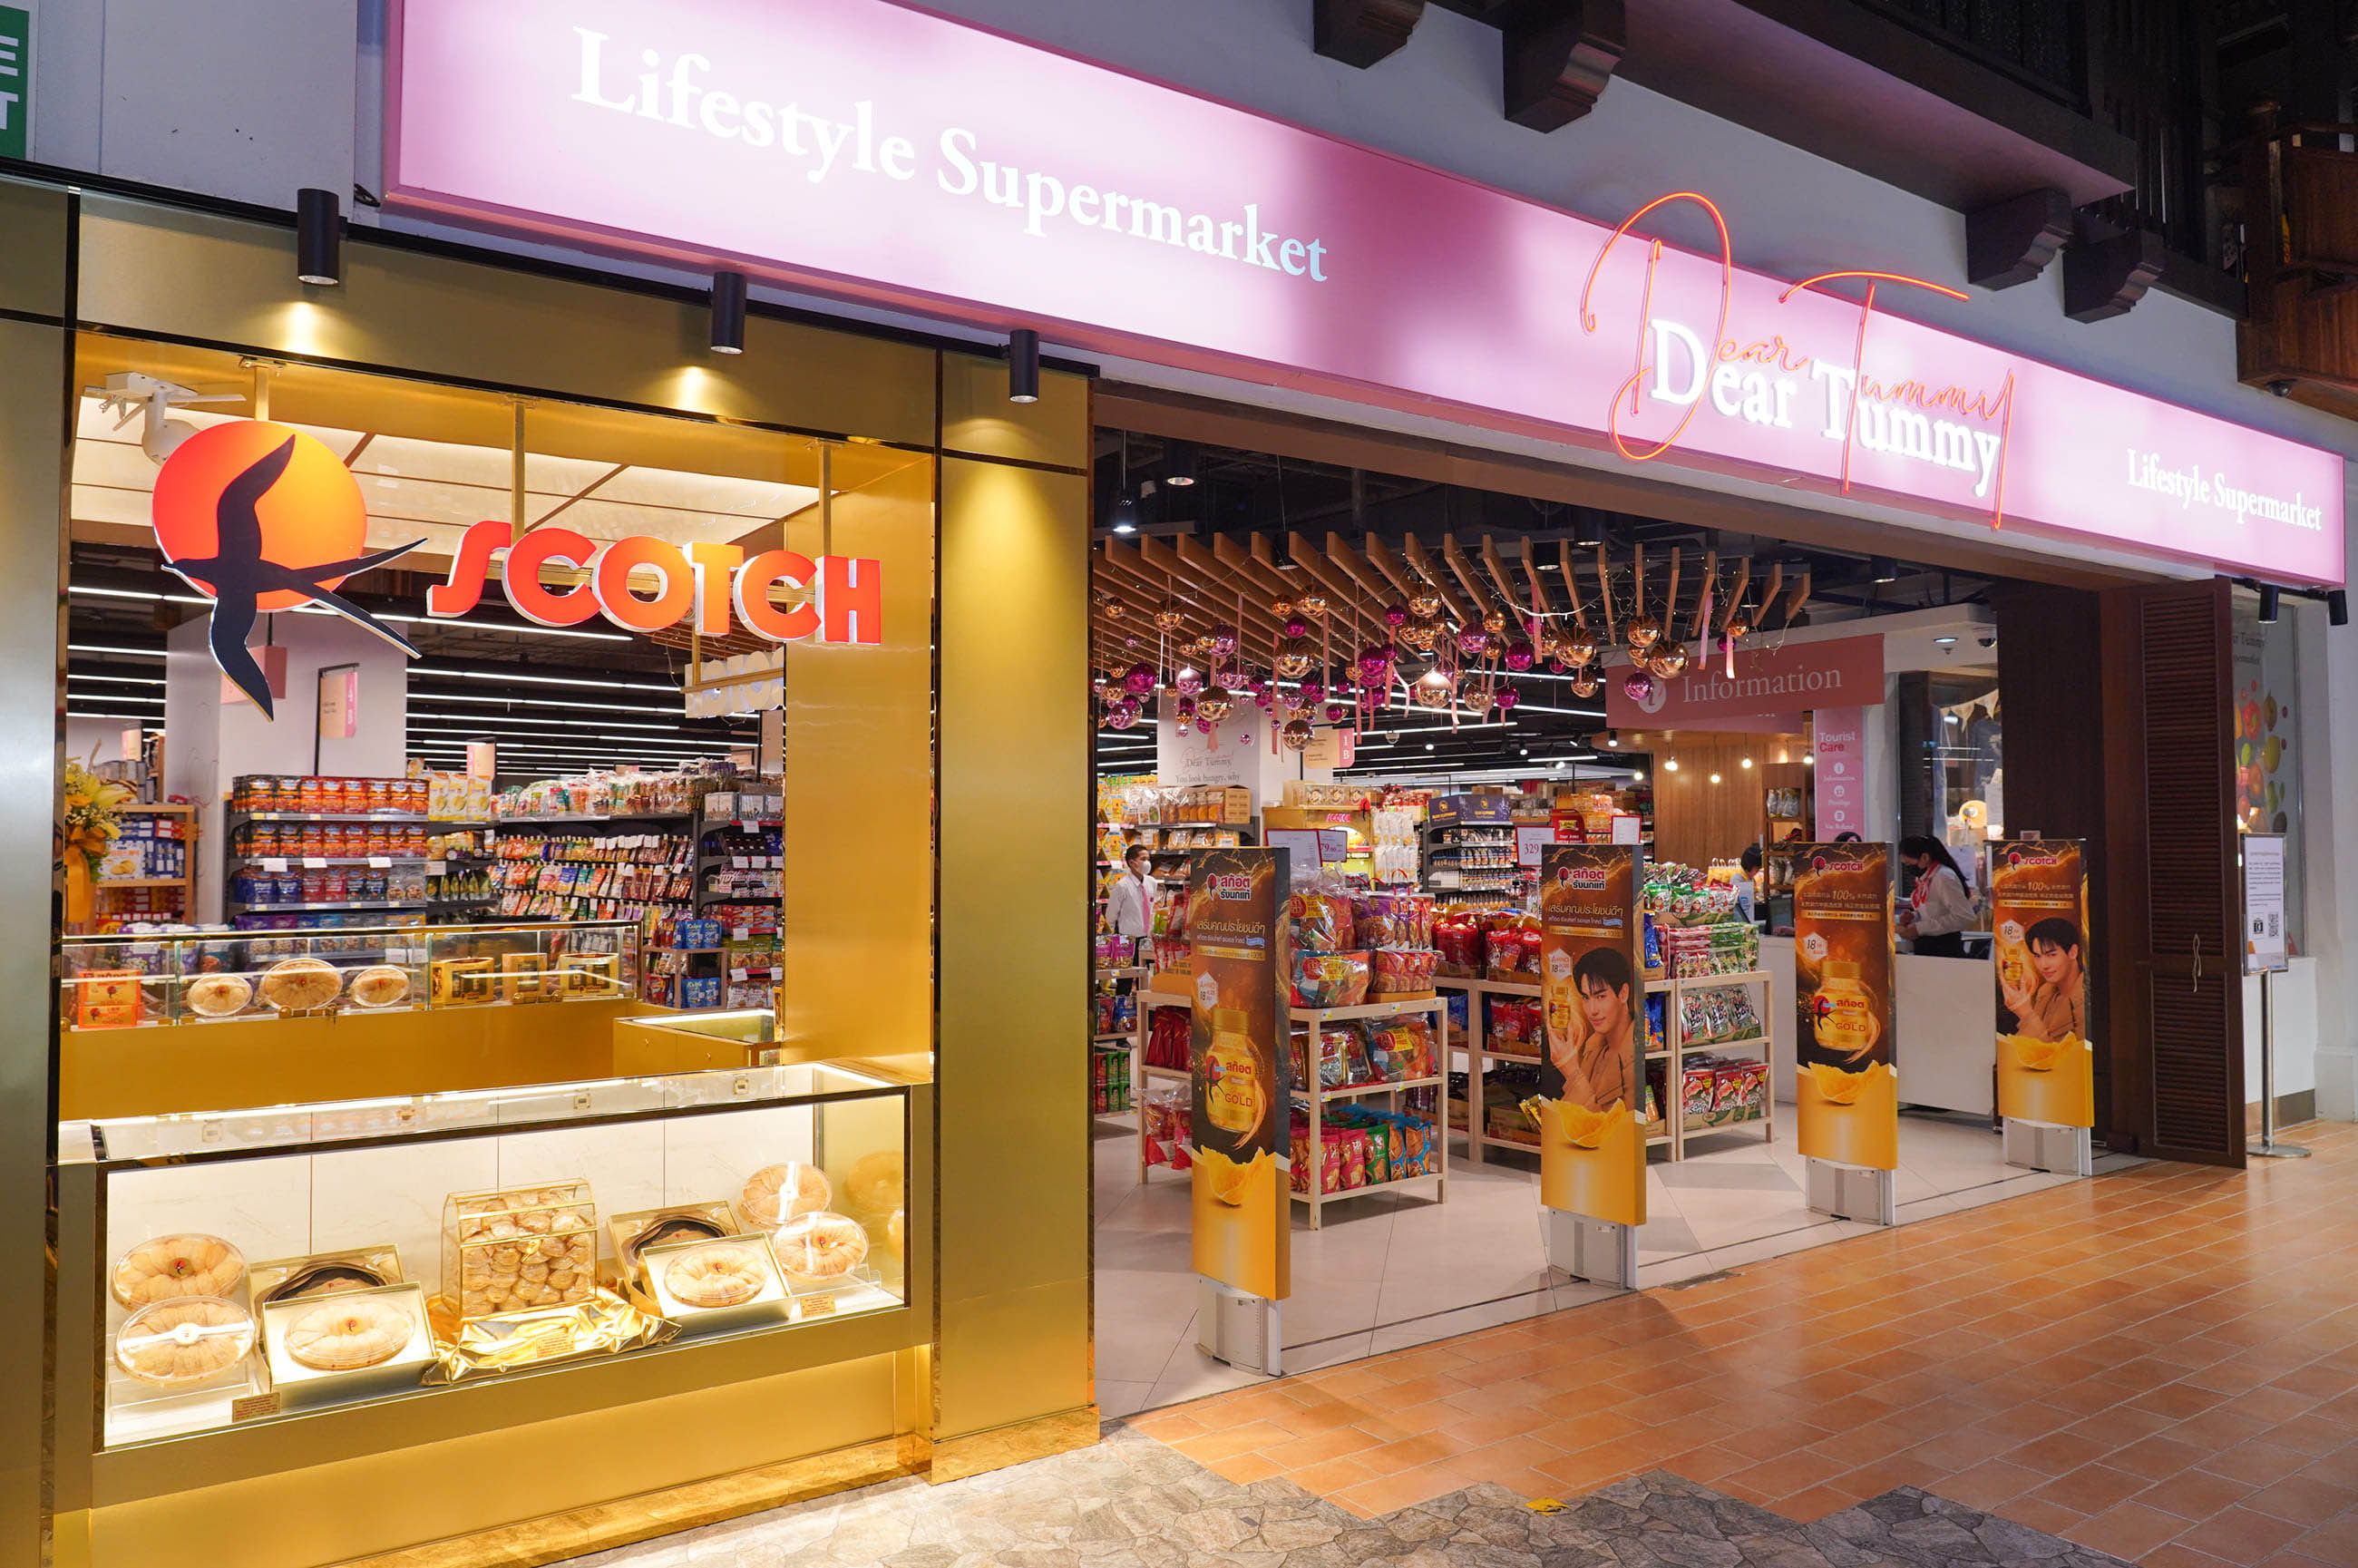 เดียร์ทัมมี่ ไลฟ์สไตล์ซูเปอร์มาร์เก็ต จับมือ สก๊อต รังนกแท้ เปิดตัว SCOTCH Experience Shop แห่งแรกในไทย